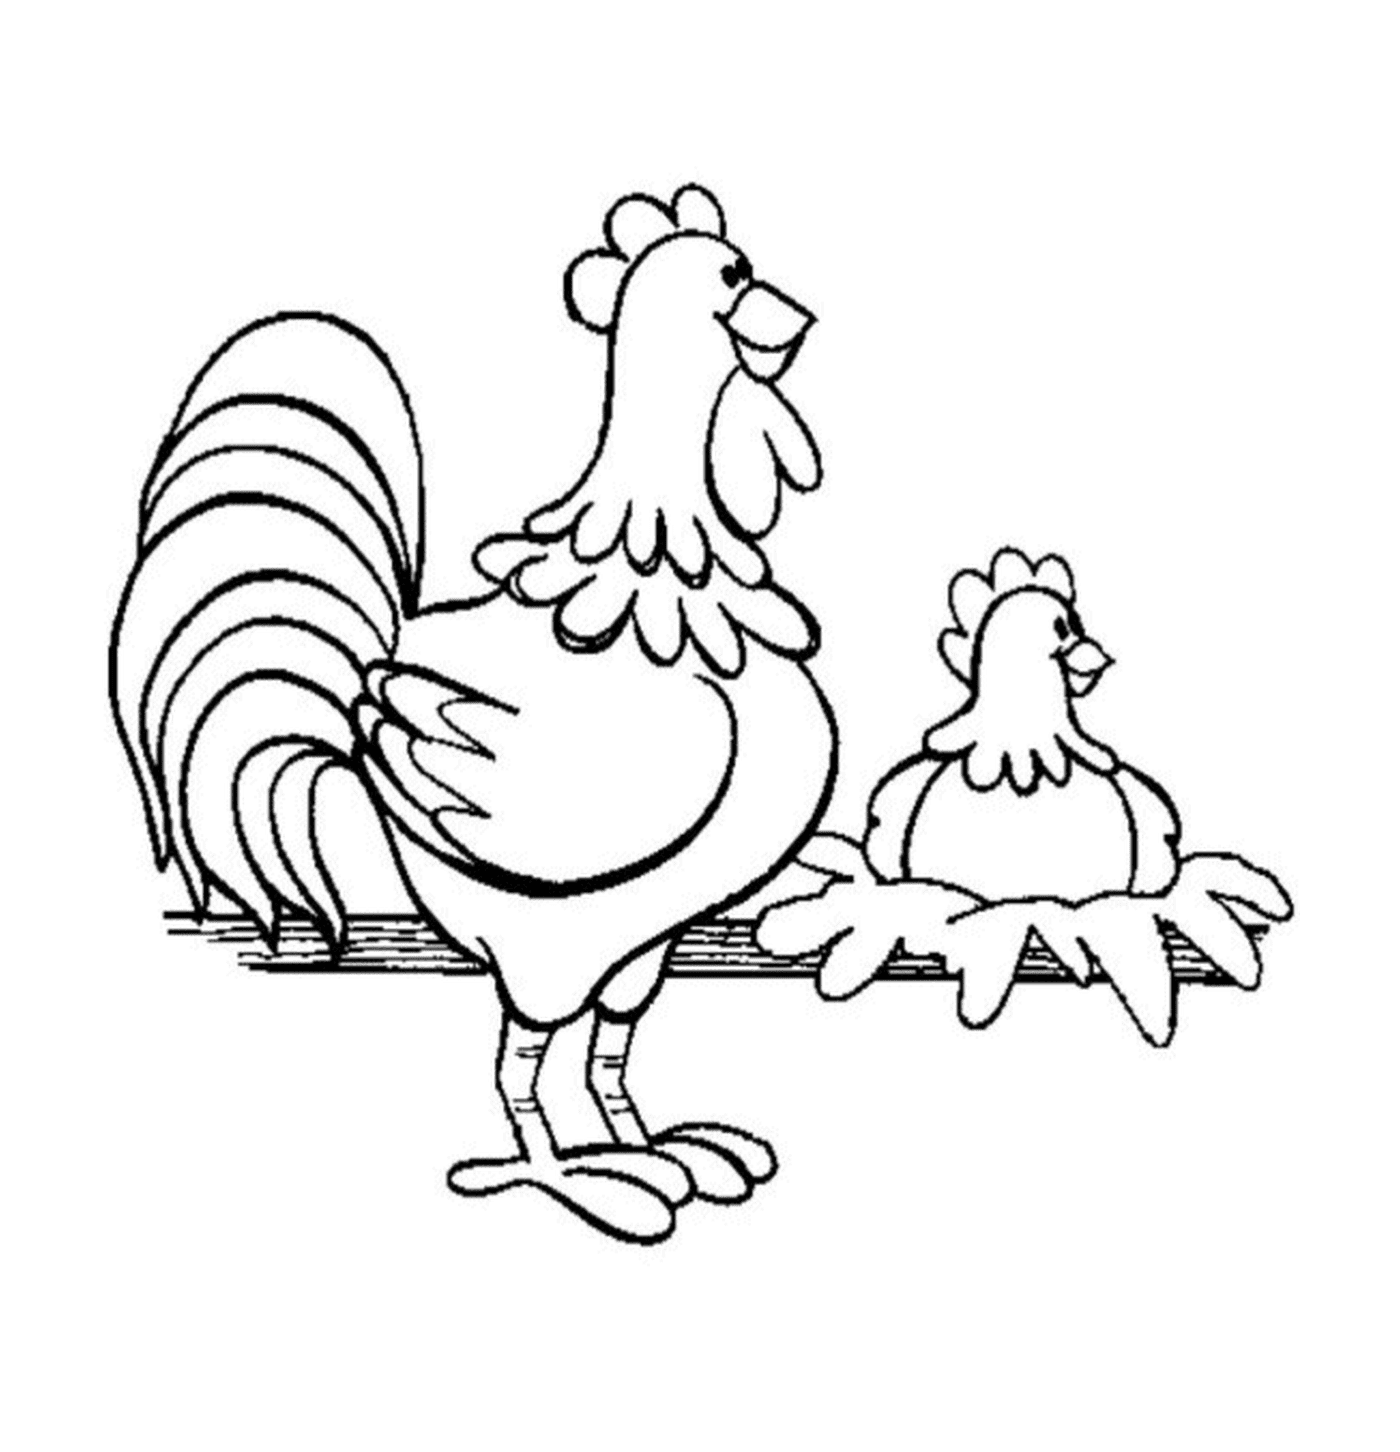  两只鸡被围篱围成两只鸡 